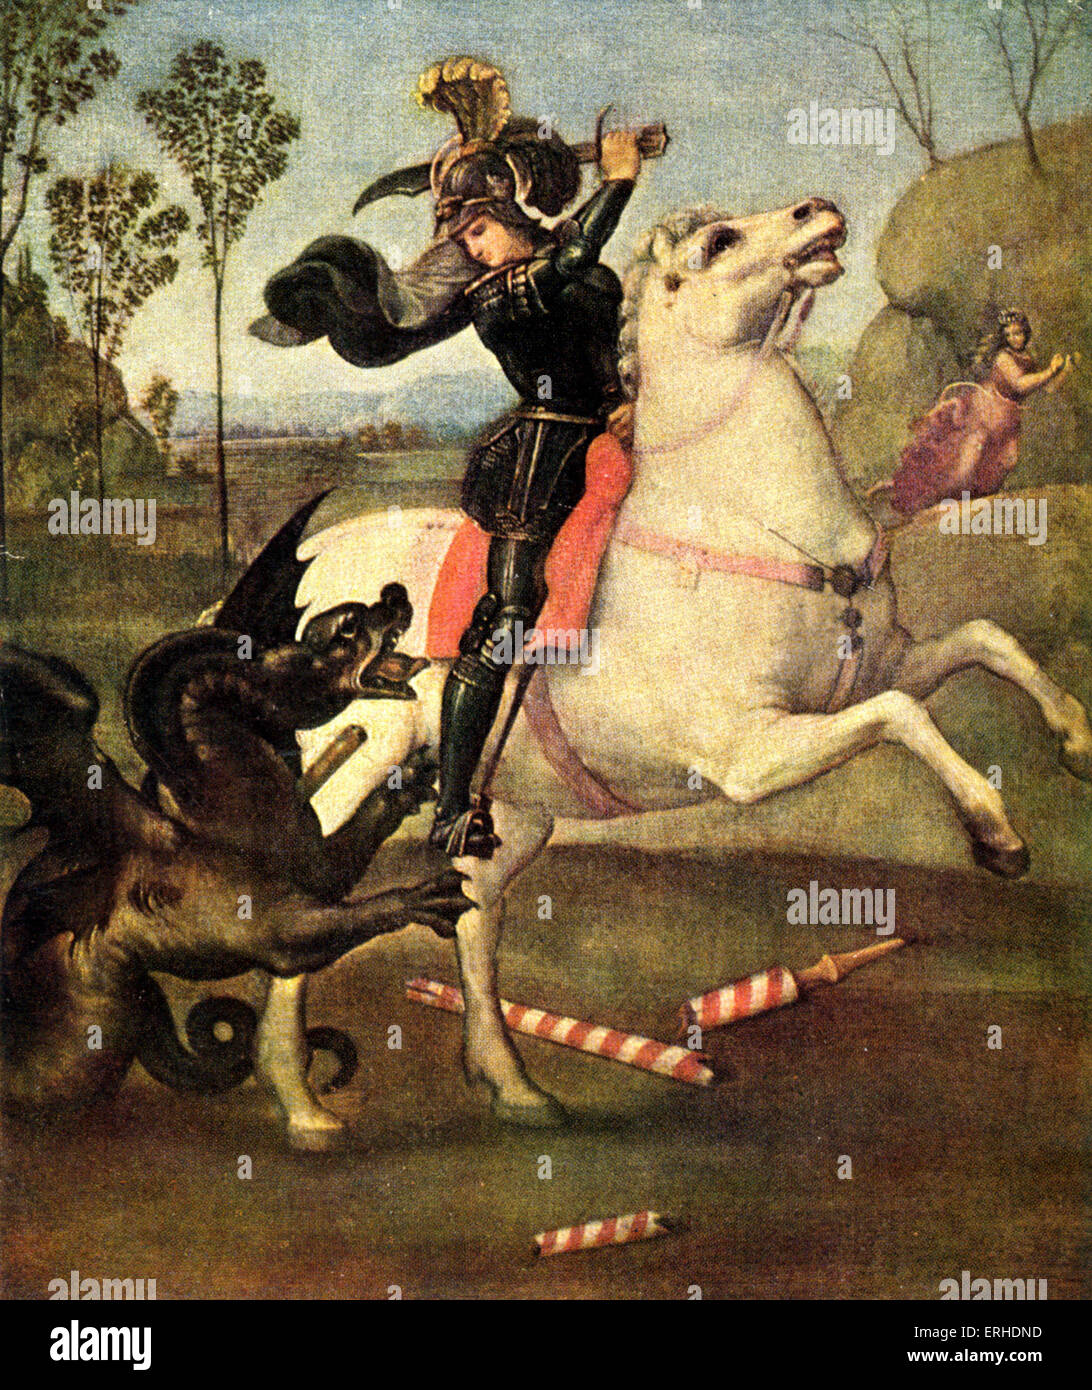 Saint George et le dragon. Peinture de Santi (Raffaelli), également connu sous le nom de Raphaël Sanzio (1485-1520). Musée du Louvre, Paris. Banque D'Images